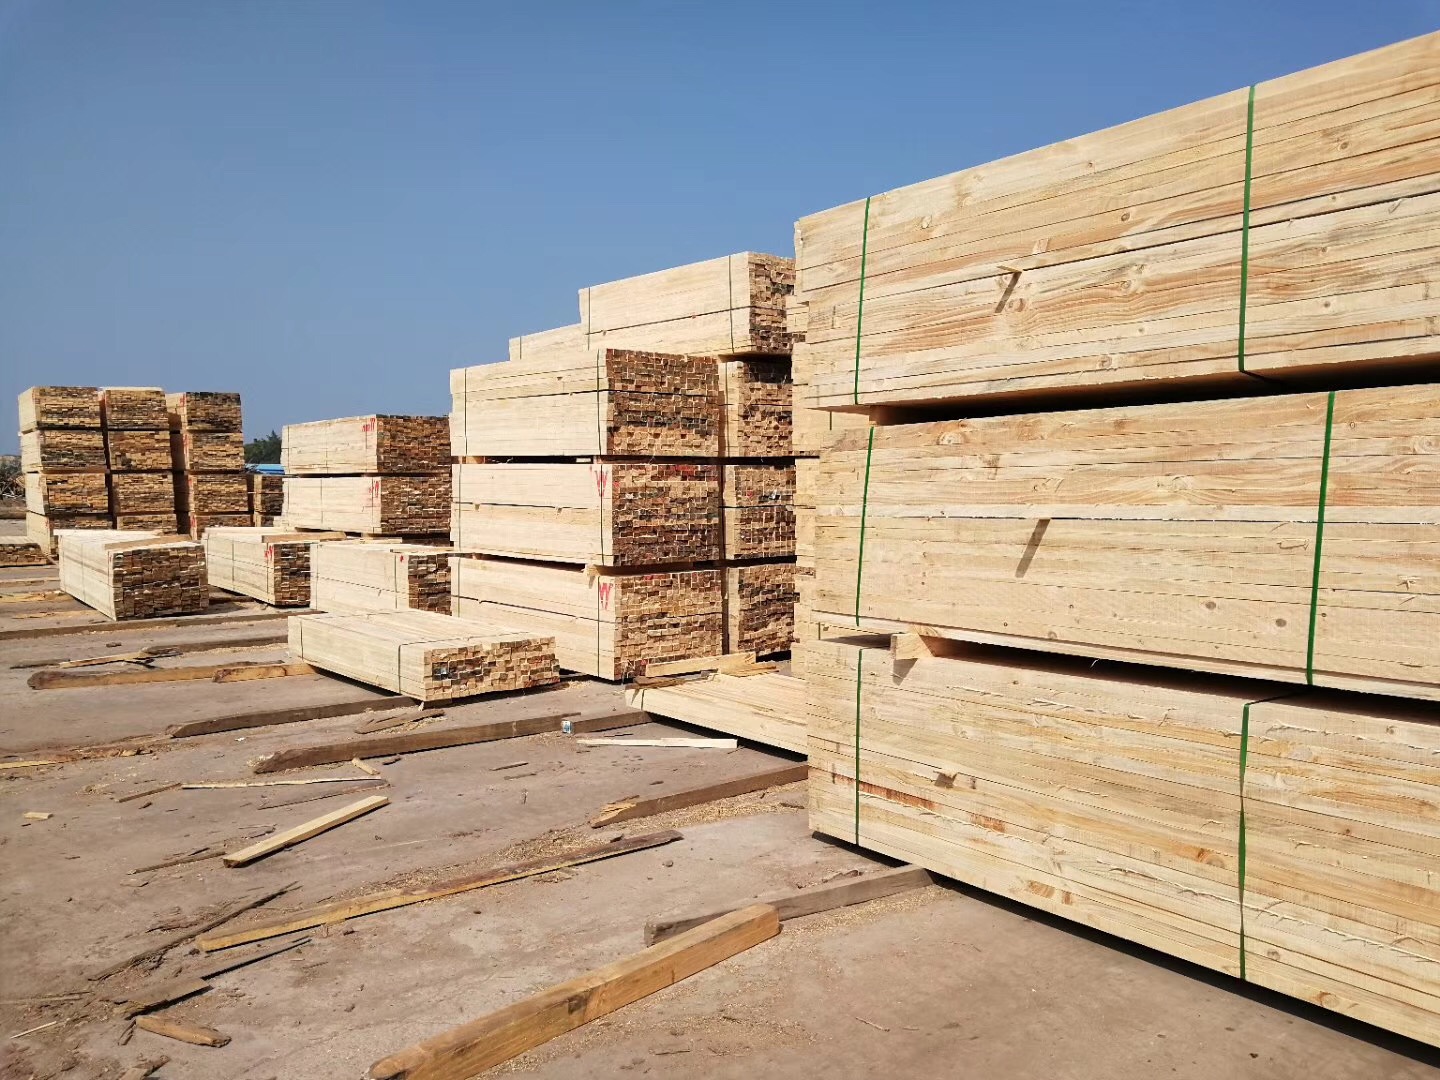 建筑用木方 建筑用木方价格 建筑用木方批发 建筑用木方供应商 建筑用木方厂家 建筑用木方供应